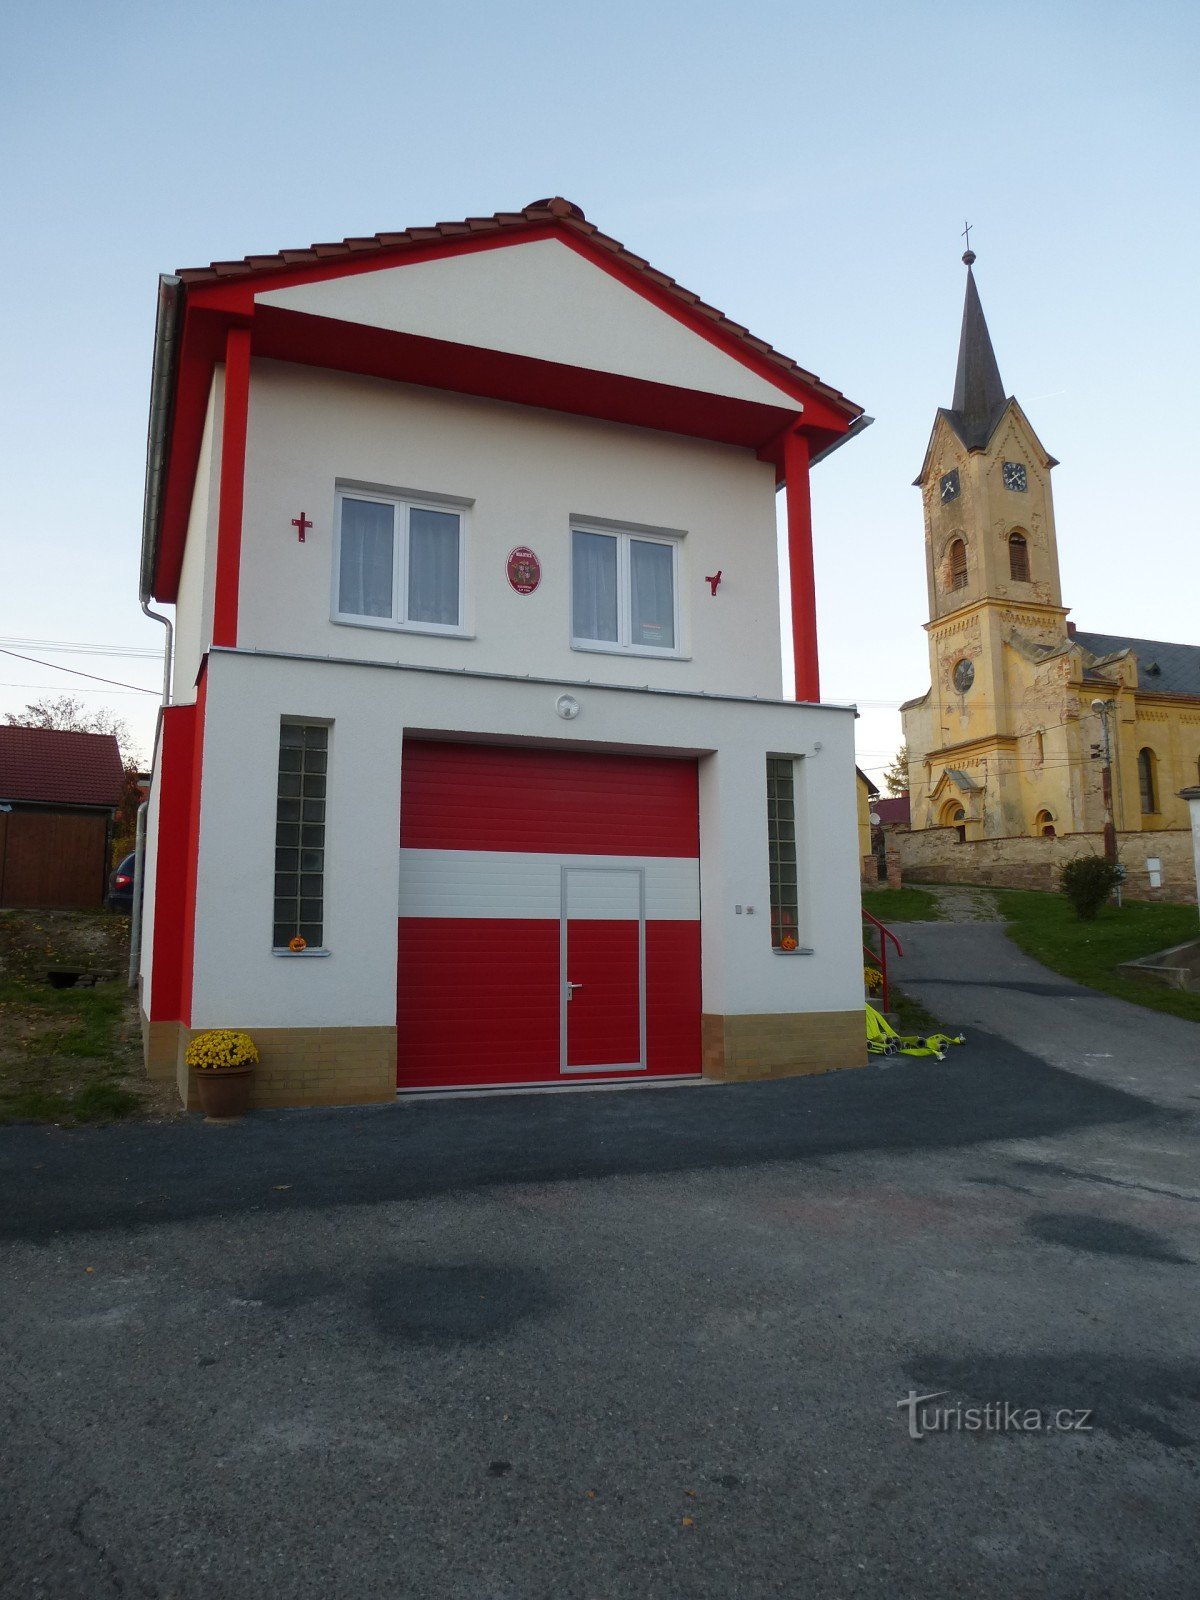 Stația de pompieri și biserica Sf. Matei